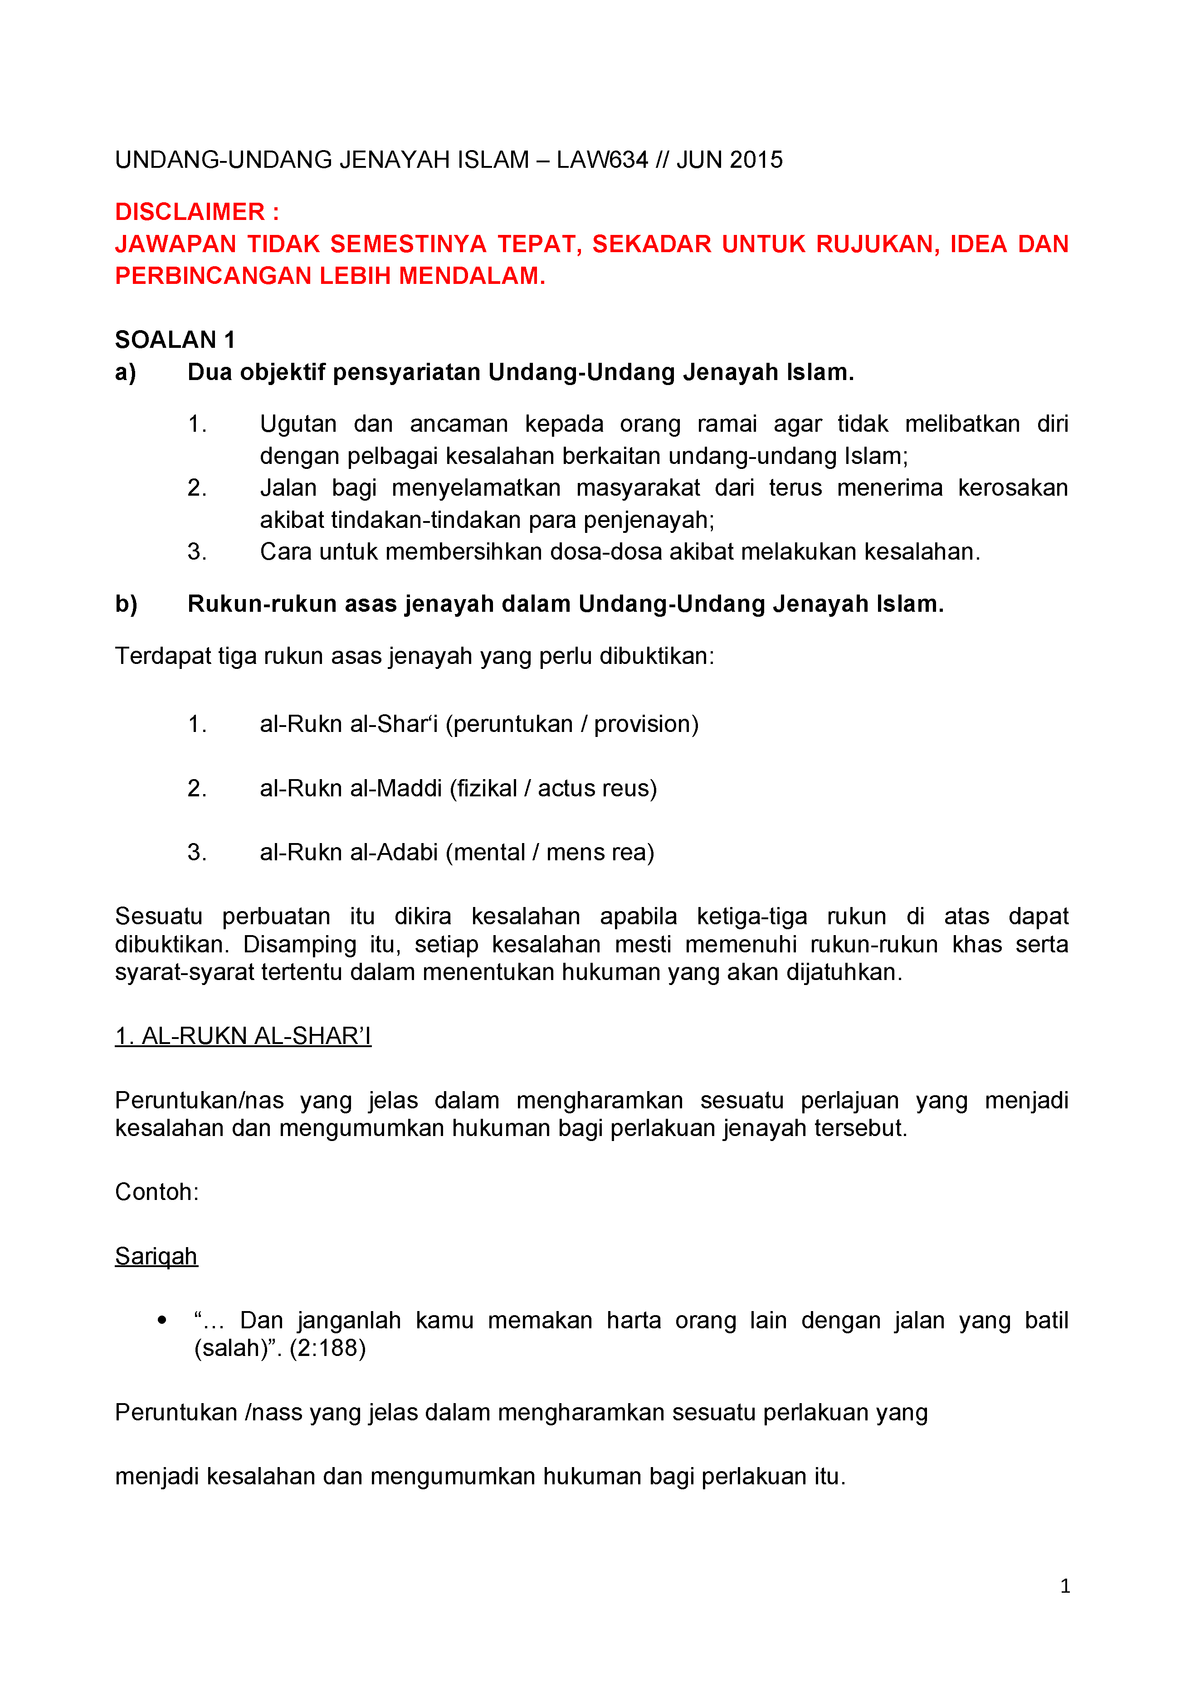 Undang- undang Jenayah Islam Exam Jun 2015 - LAW 634 